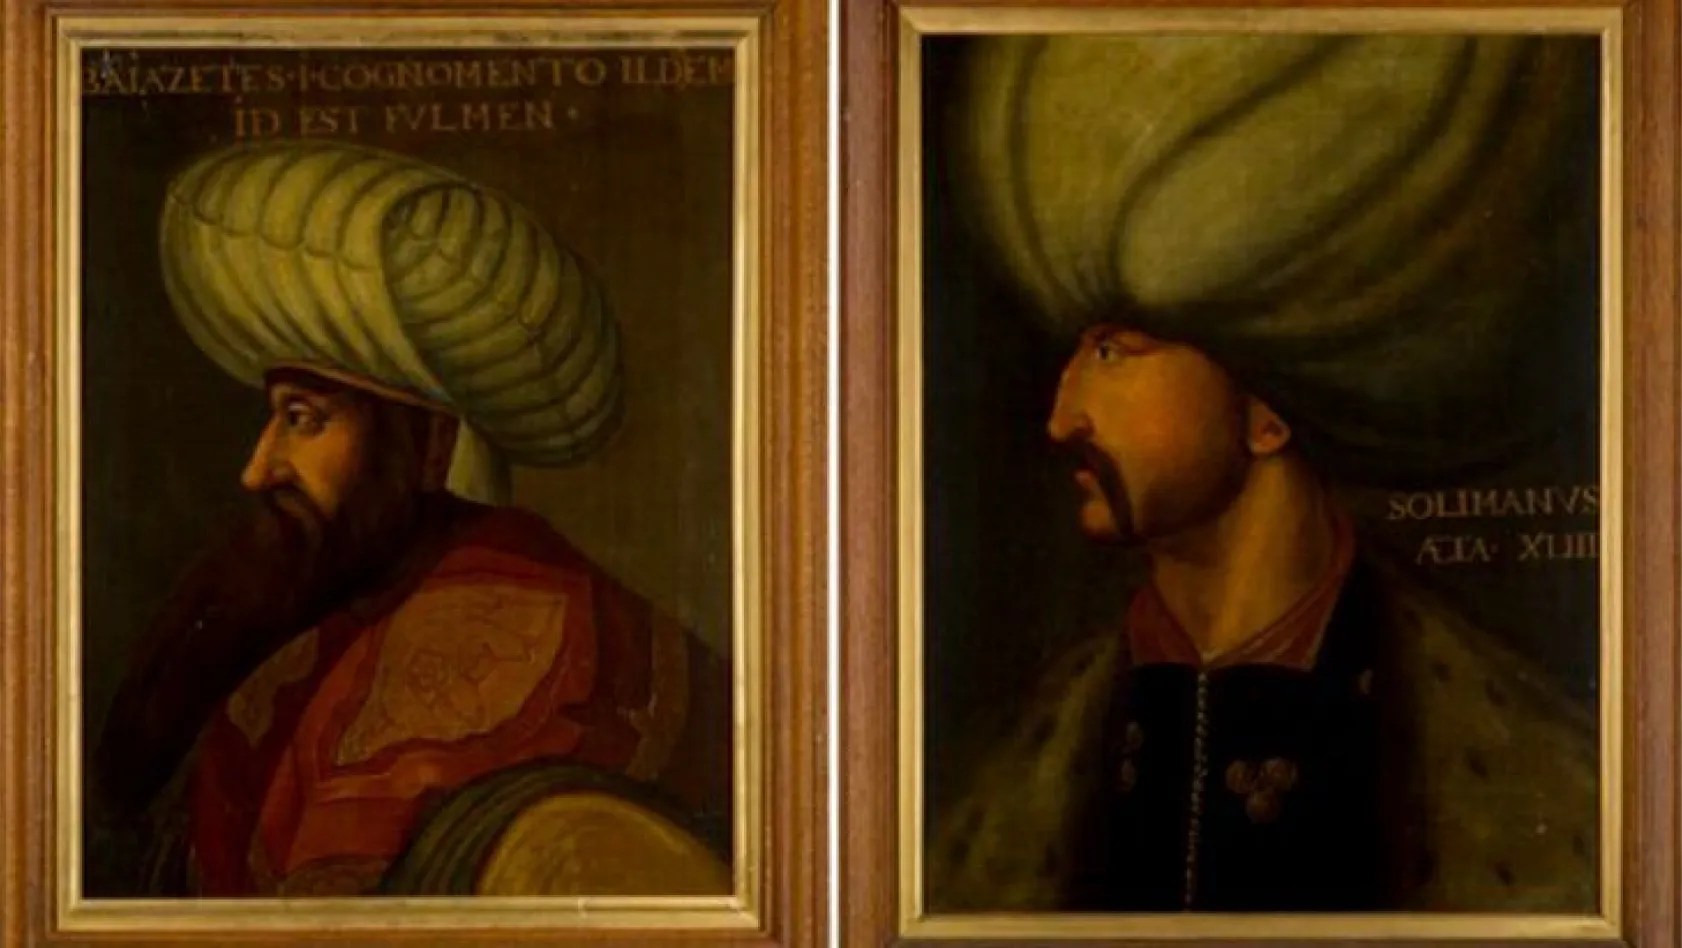 Osmanlı padişahlarının tabloları hayranlık uyandırdı